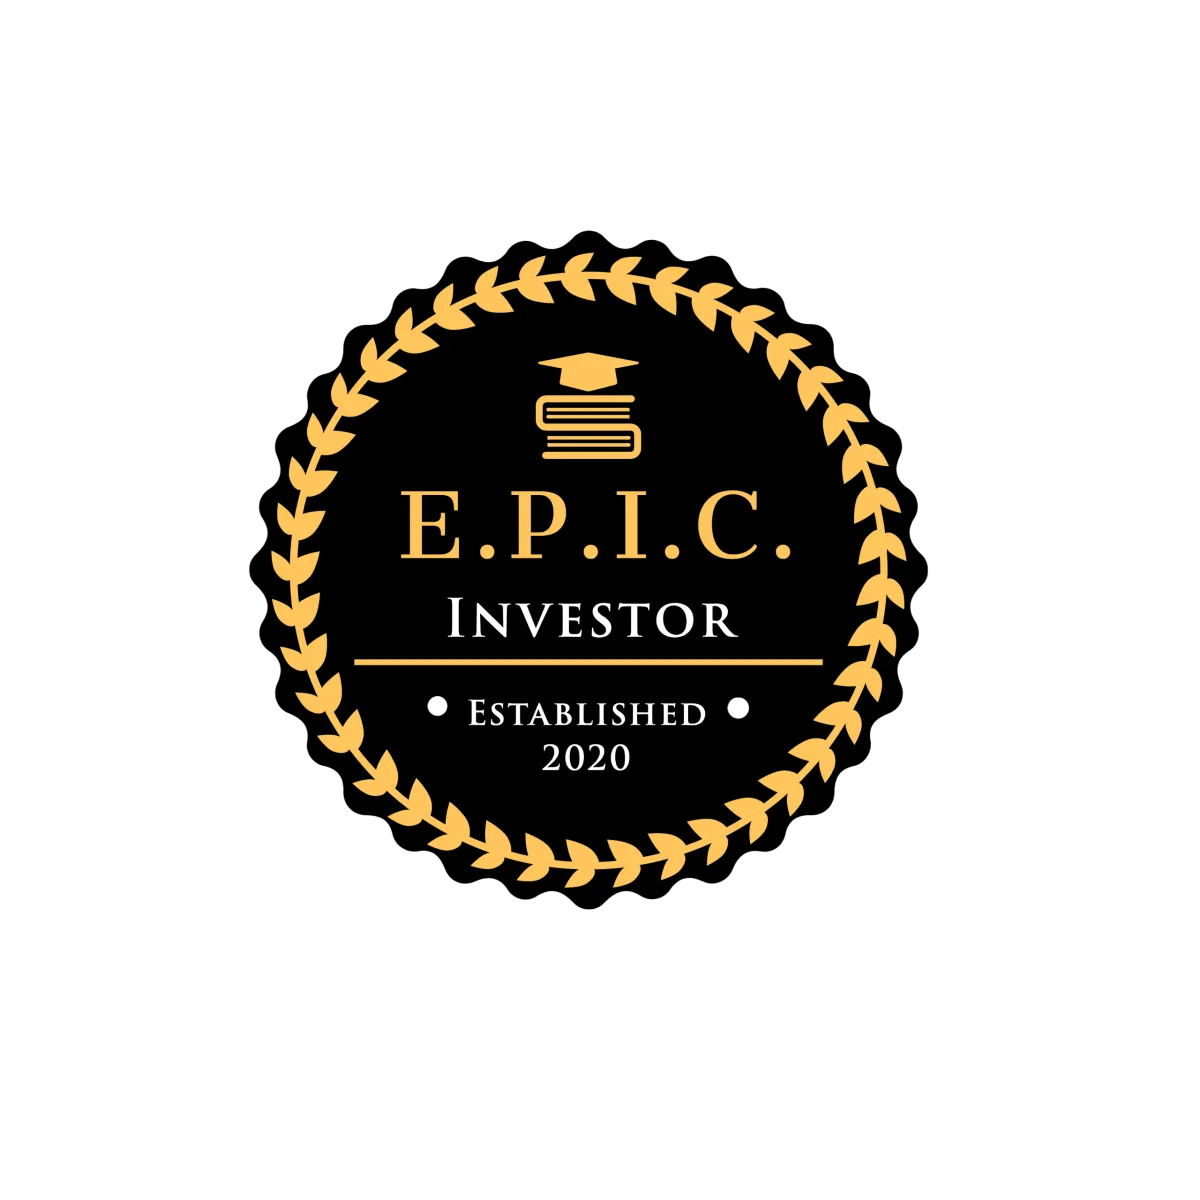 Qualified EPIC Investor